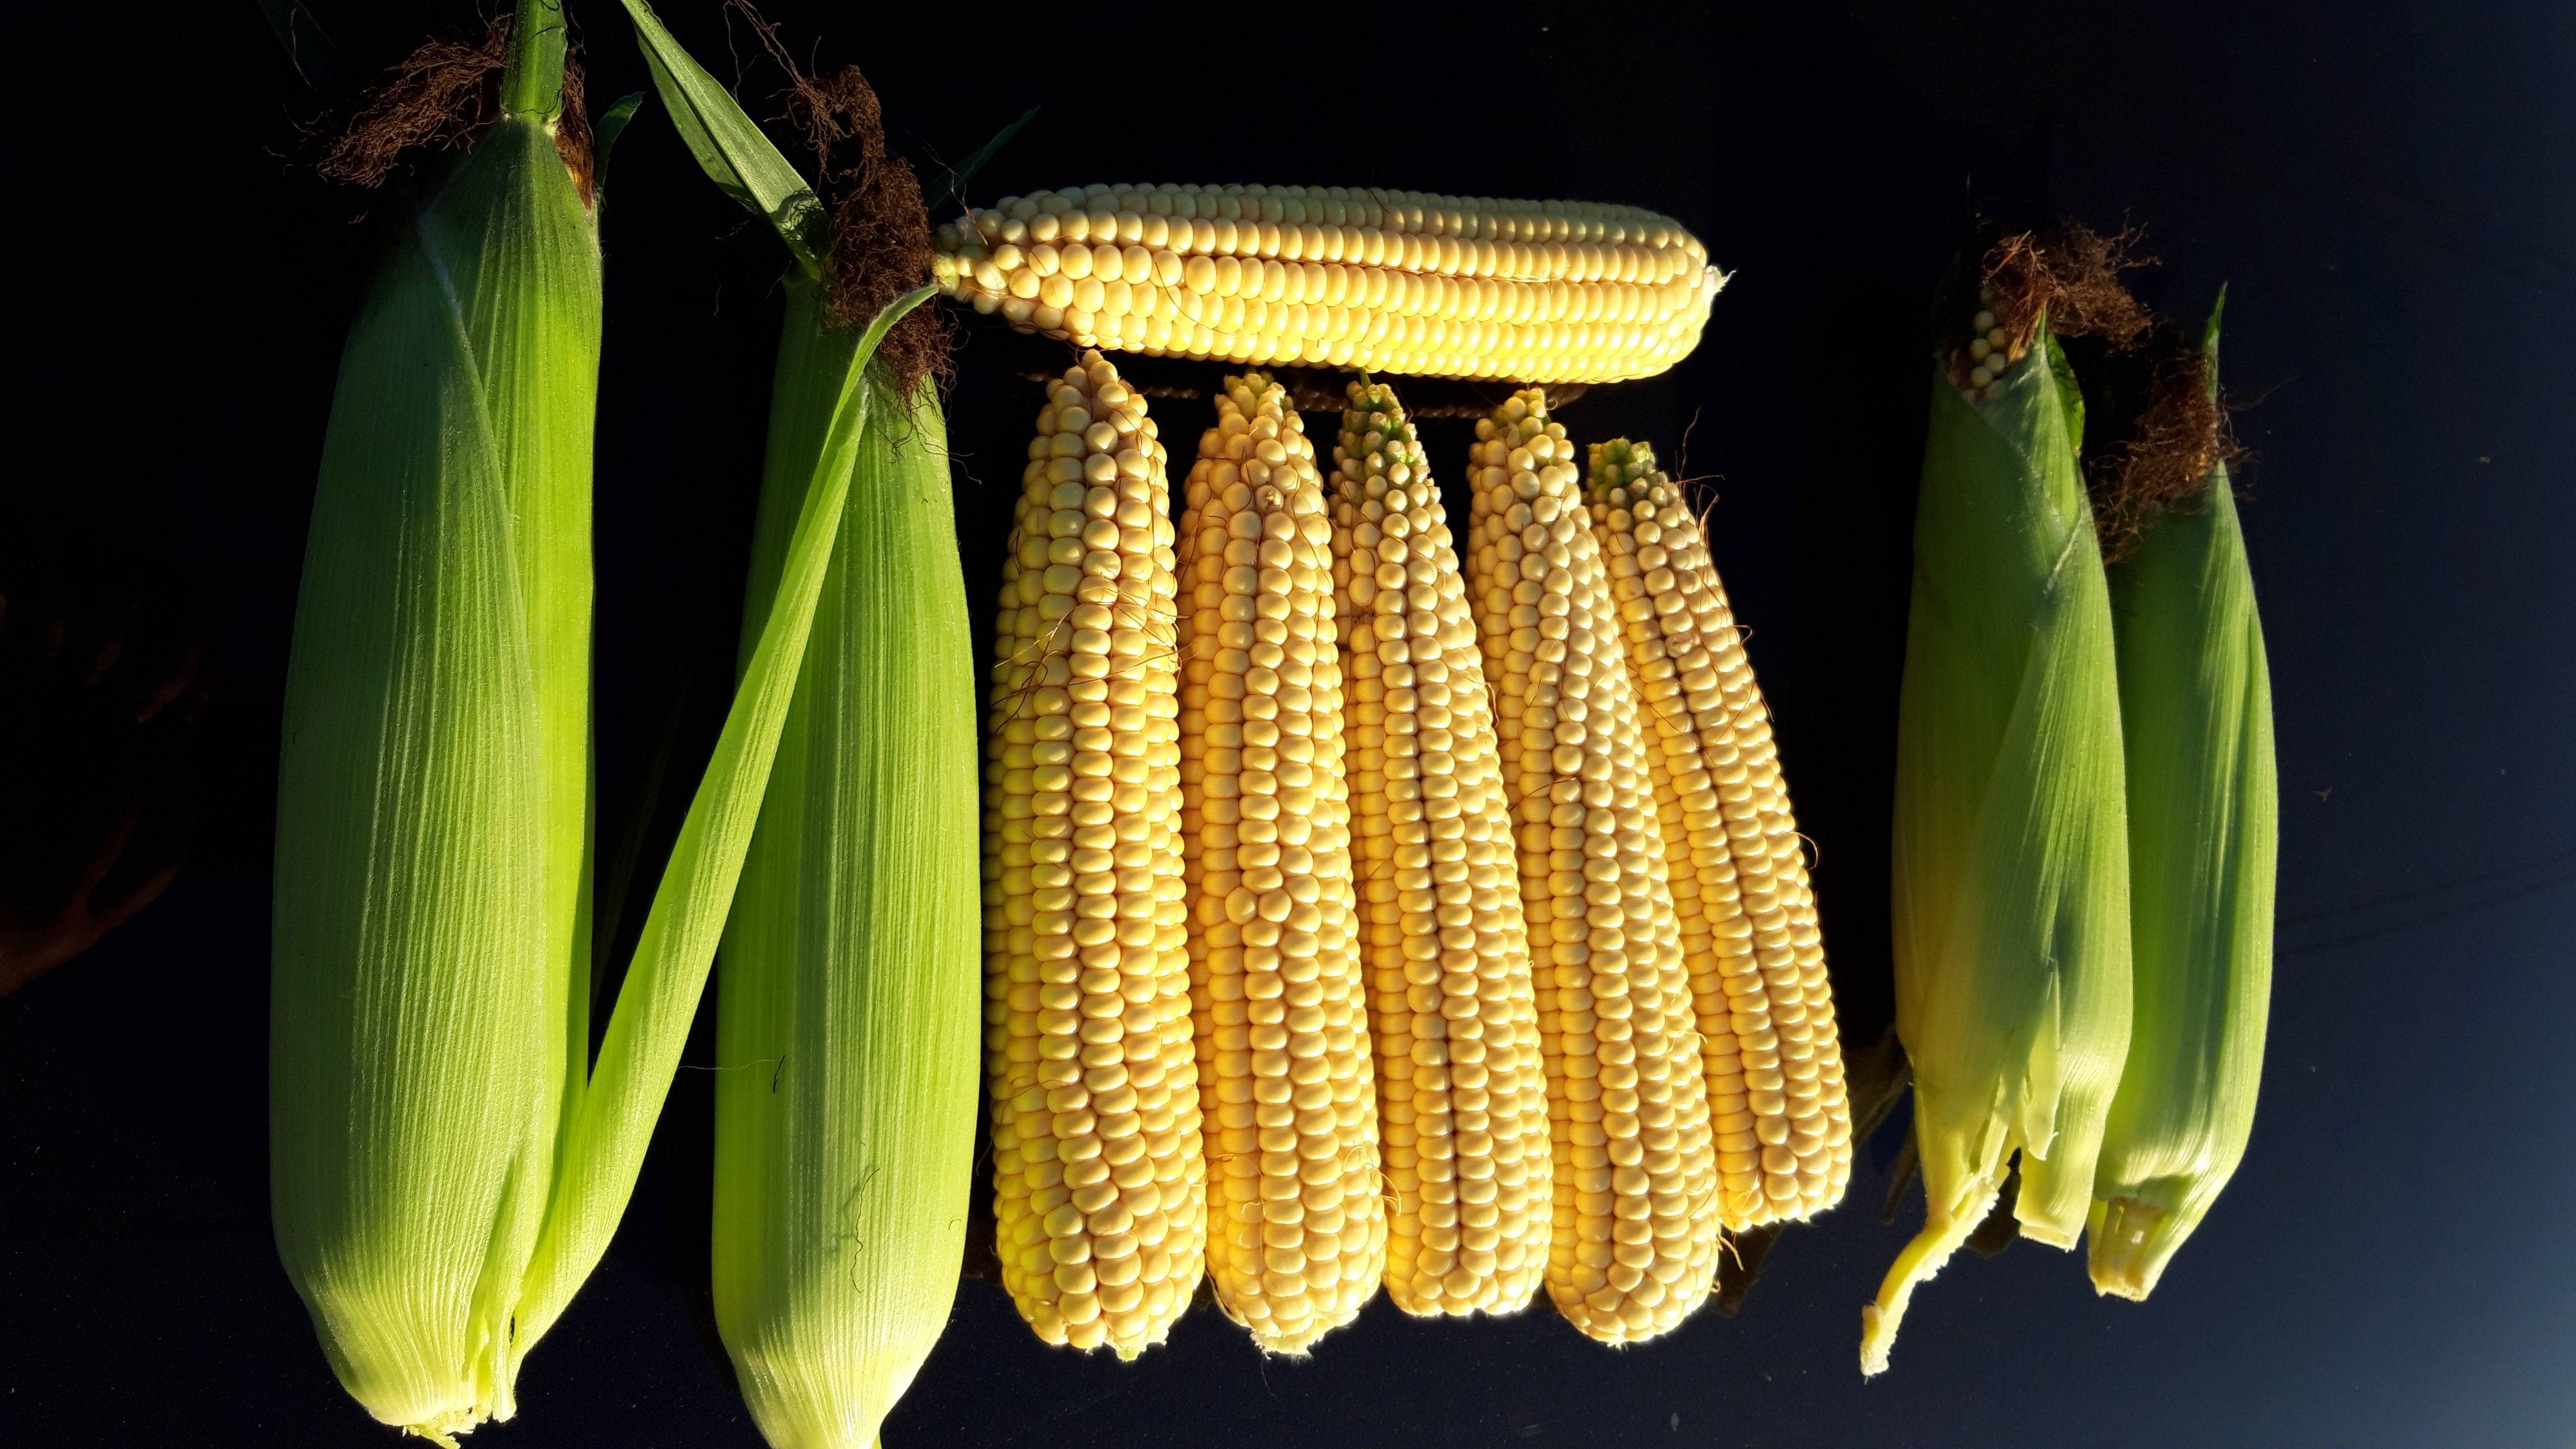 Описание и выбор семян кукурузы, как сохранить в домашних условиях